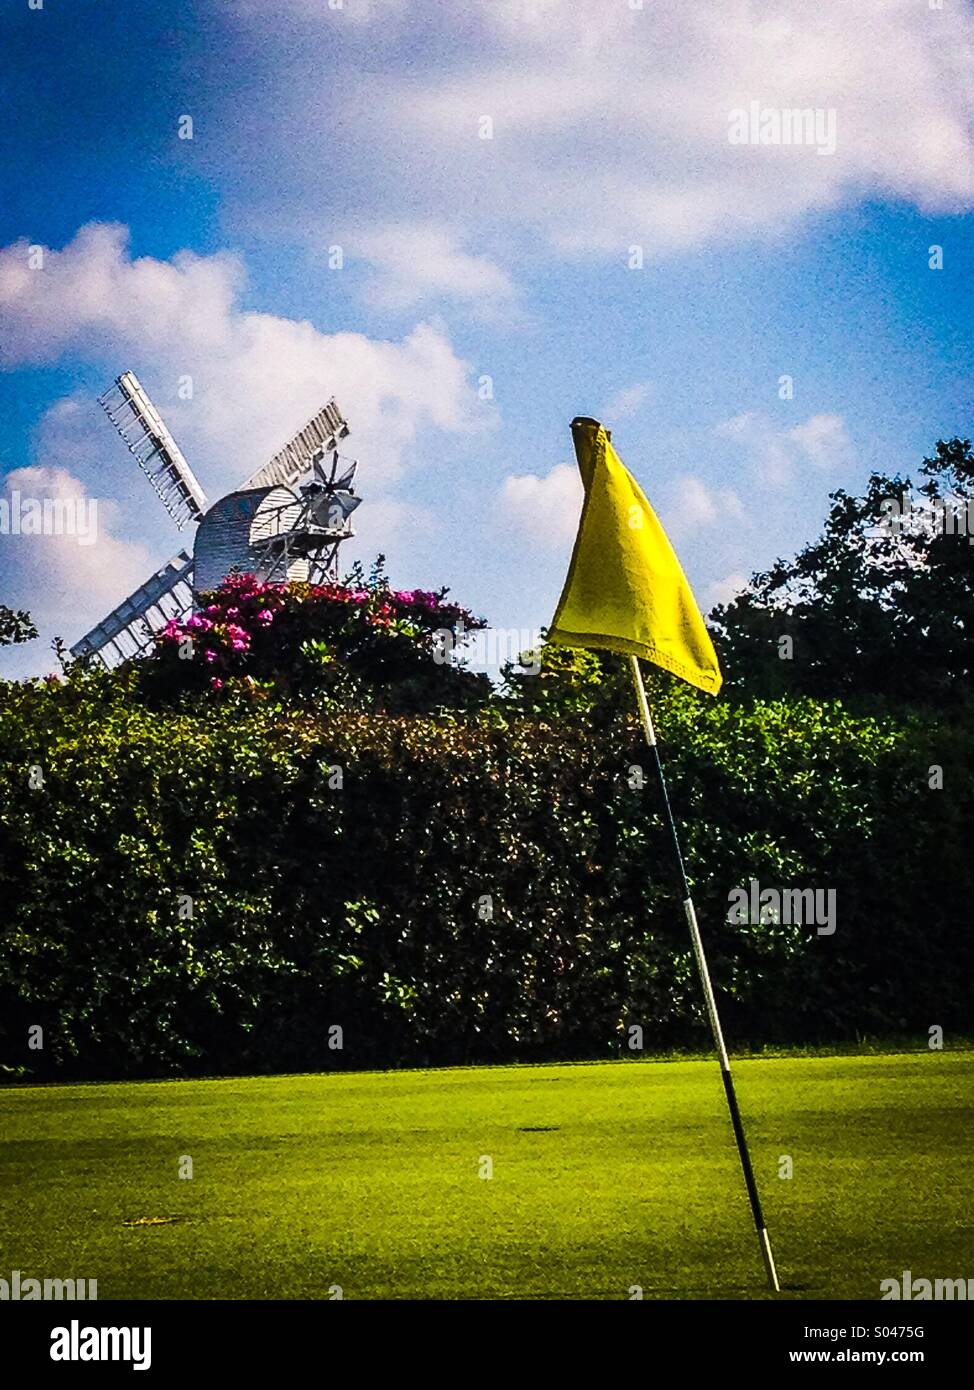 Golf-Fähnchen auf grün mit Windmühle im Hintergrund hinter Hecke Stockfoto